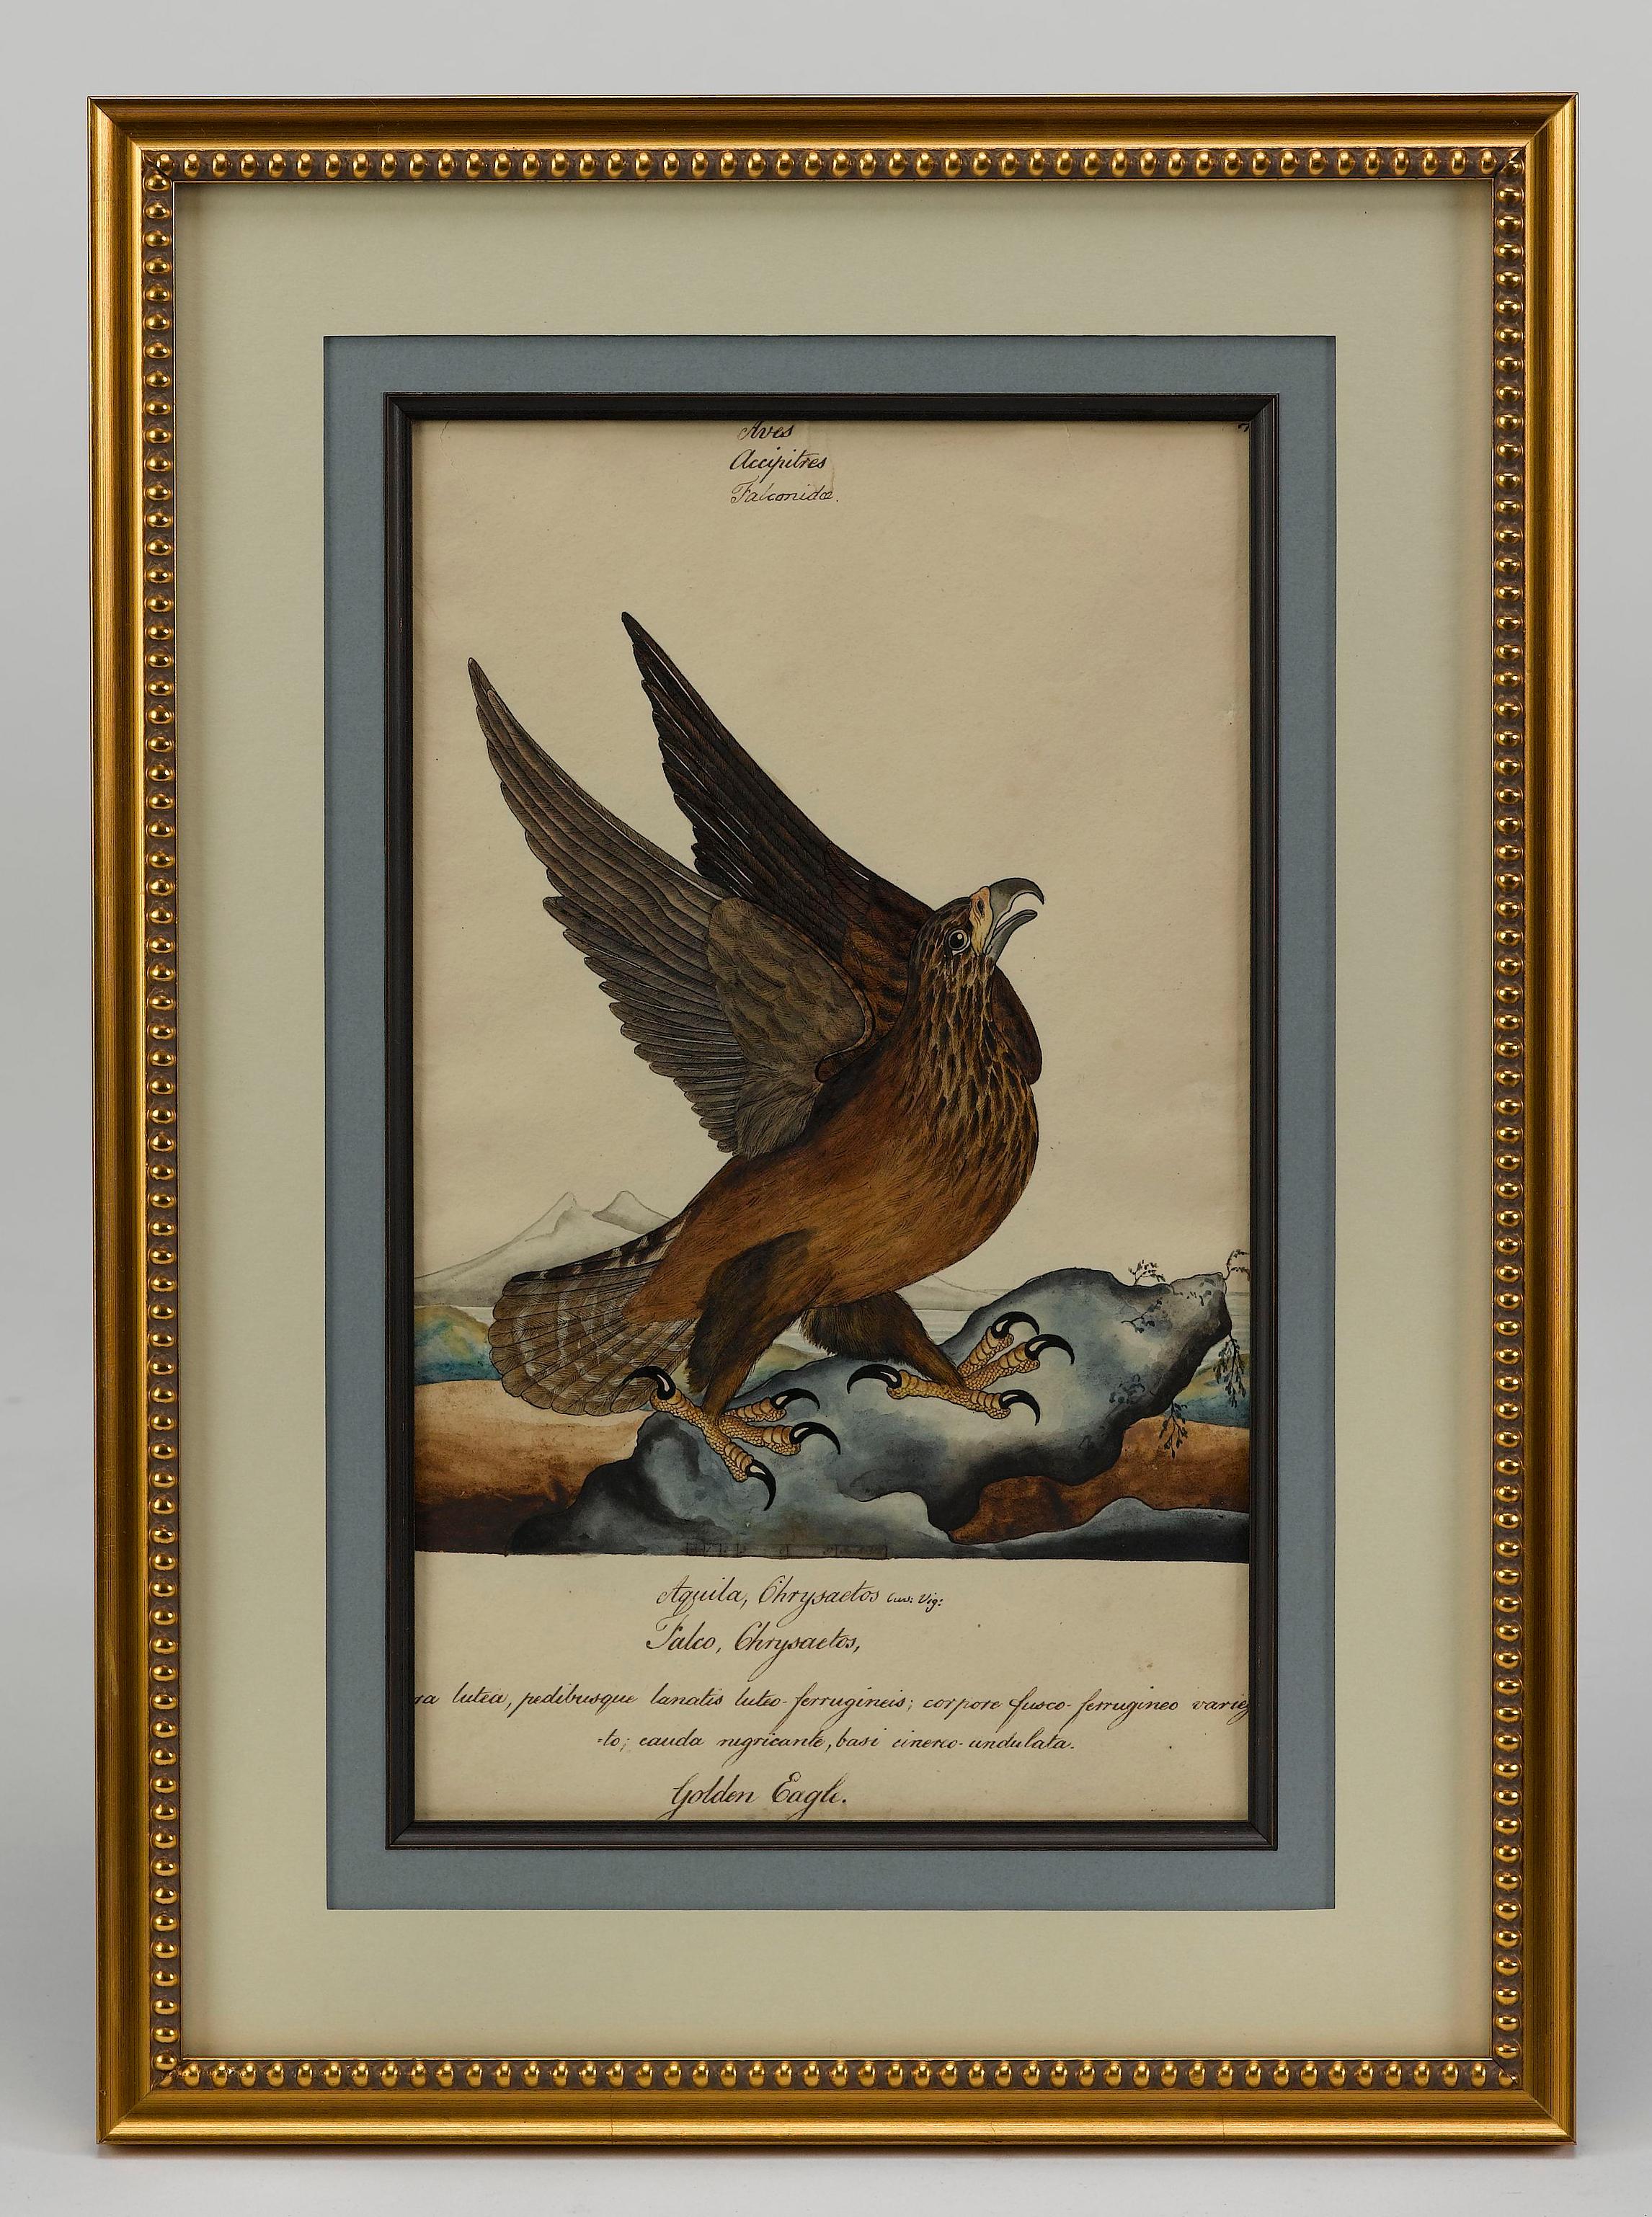 Voici une superbe peinture originale d'un aigle royal réalisée par William Goodalls, artiste britannique spécialisé dans l'histoire naturelle. Combinaison magnifique et colorée d'aquarelle et d'encre, cette peinture est rendue dans un style détaillé